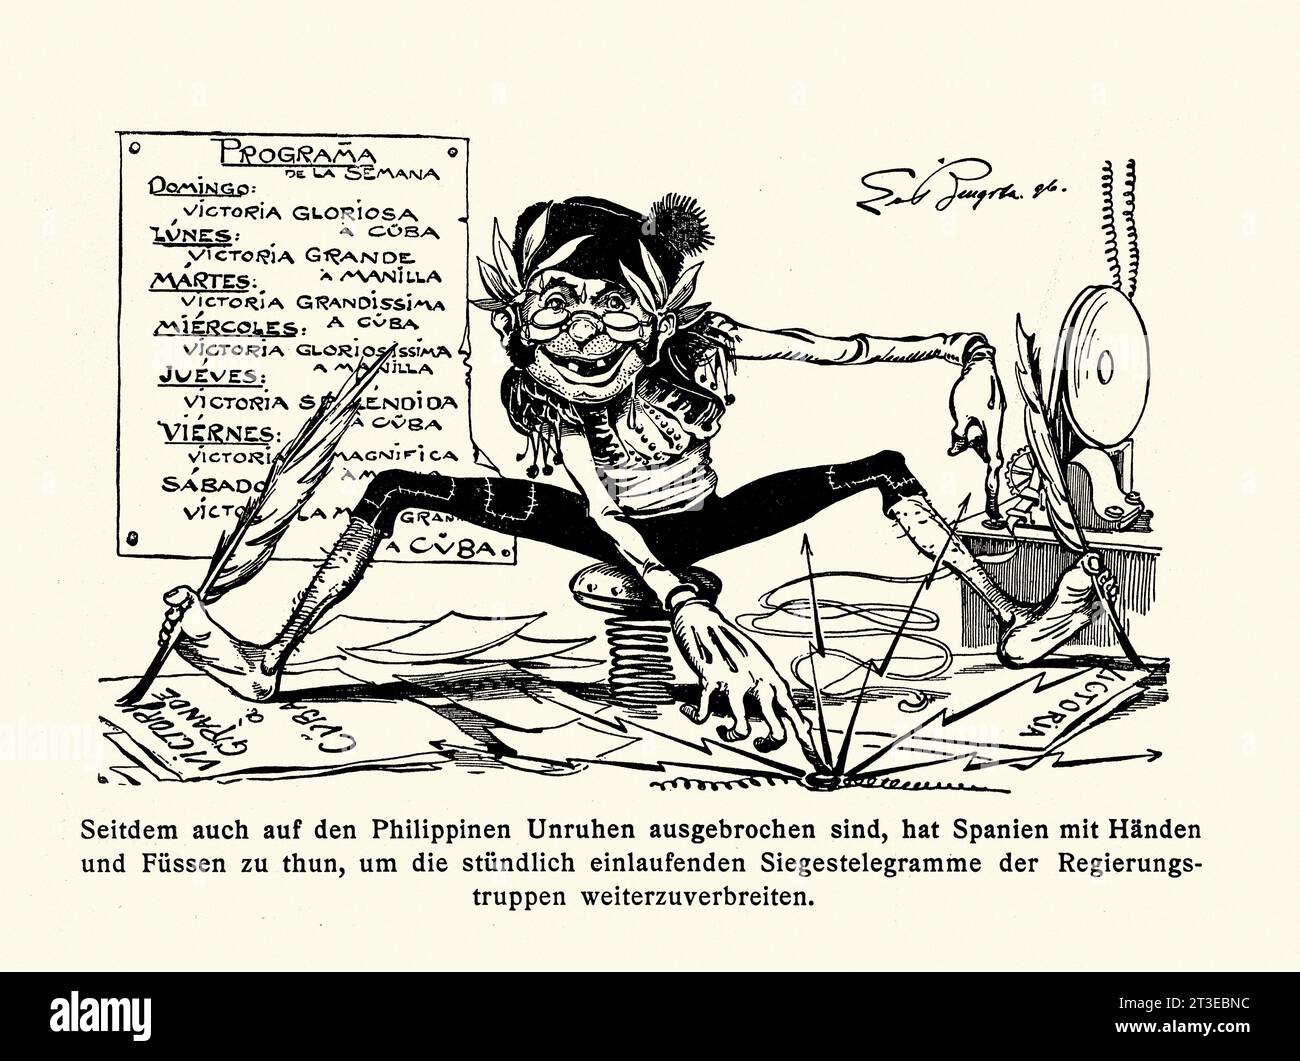 Politischer Karikaturfilm über die Philippinische Revolution 1896 ein Konflikt der philippinischen Revolutionäre gegen die spanischen Kolonialbehörden, um die Unabhängigkeit des Archipels zu gewinnen. Stockfoto